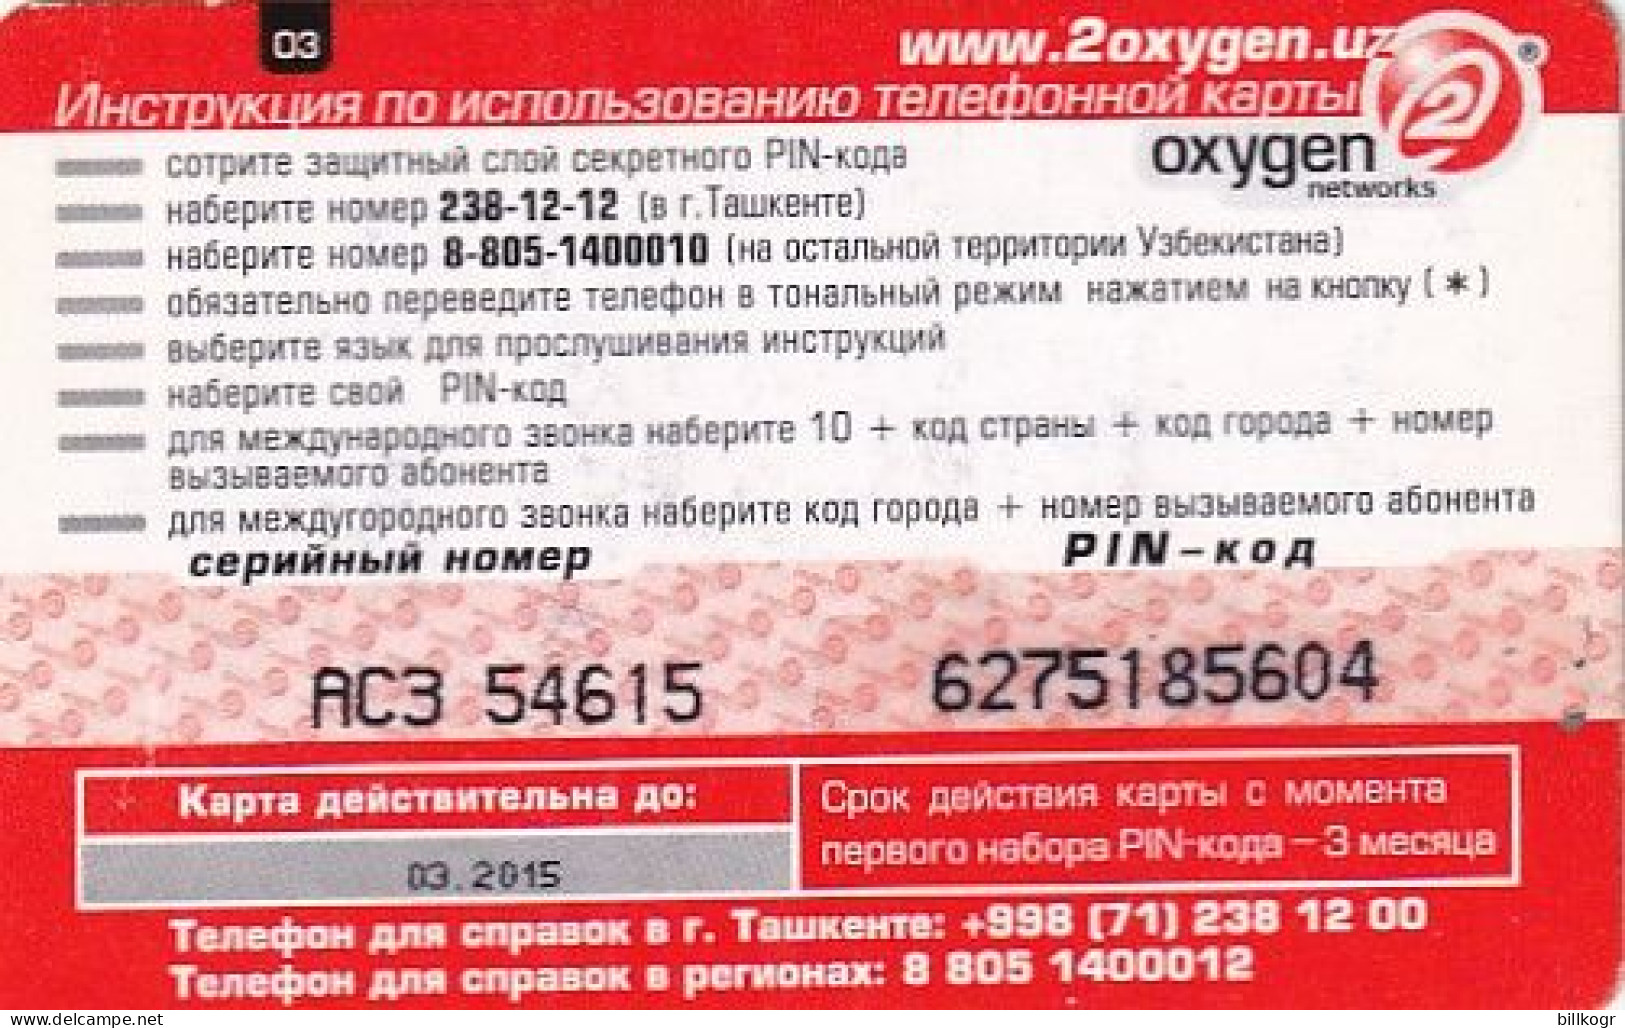 UZBEKISTAN - Oxygen 2 Networks, Uzbek Telecom Prepaid Card 03 Units, Used - Ouzbékistan